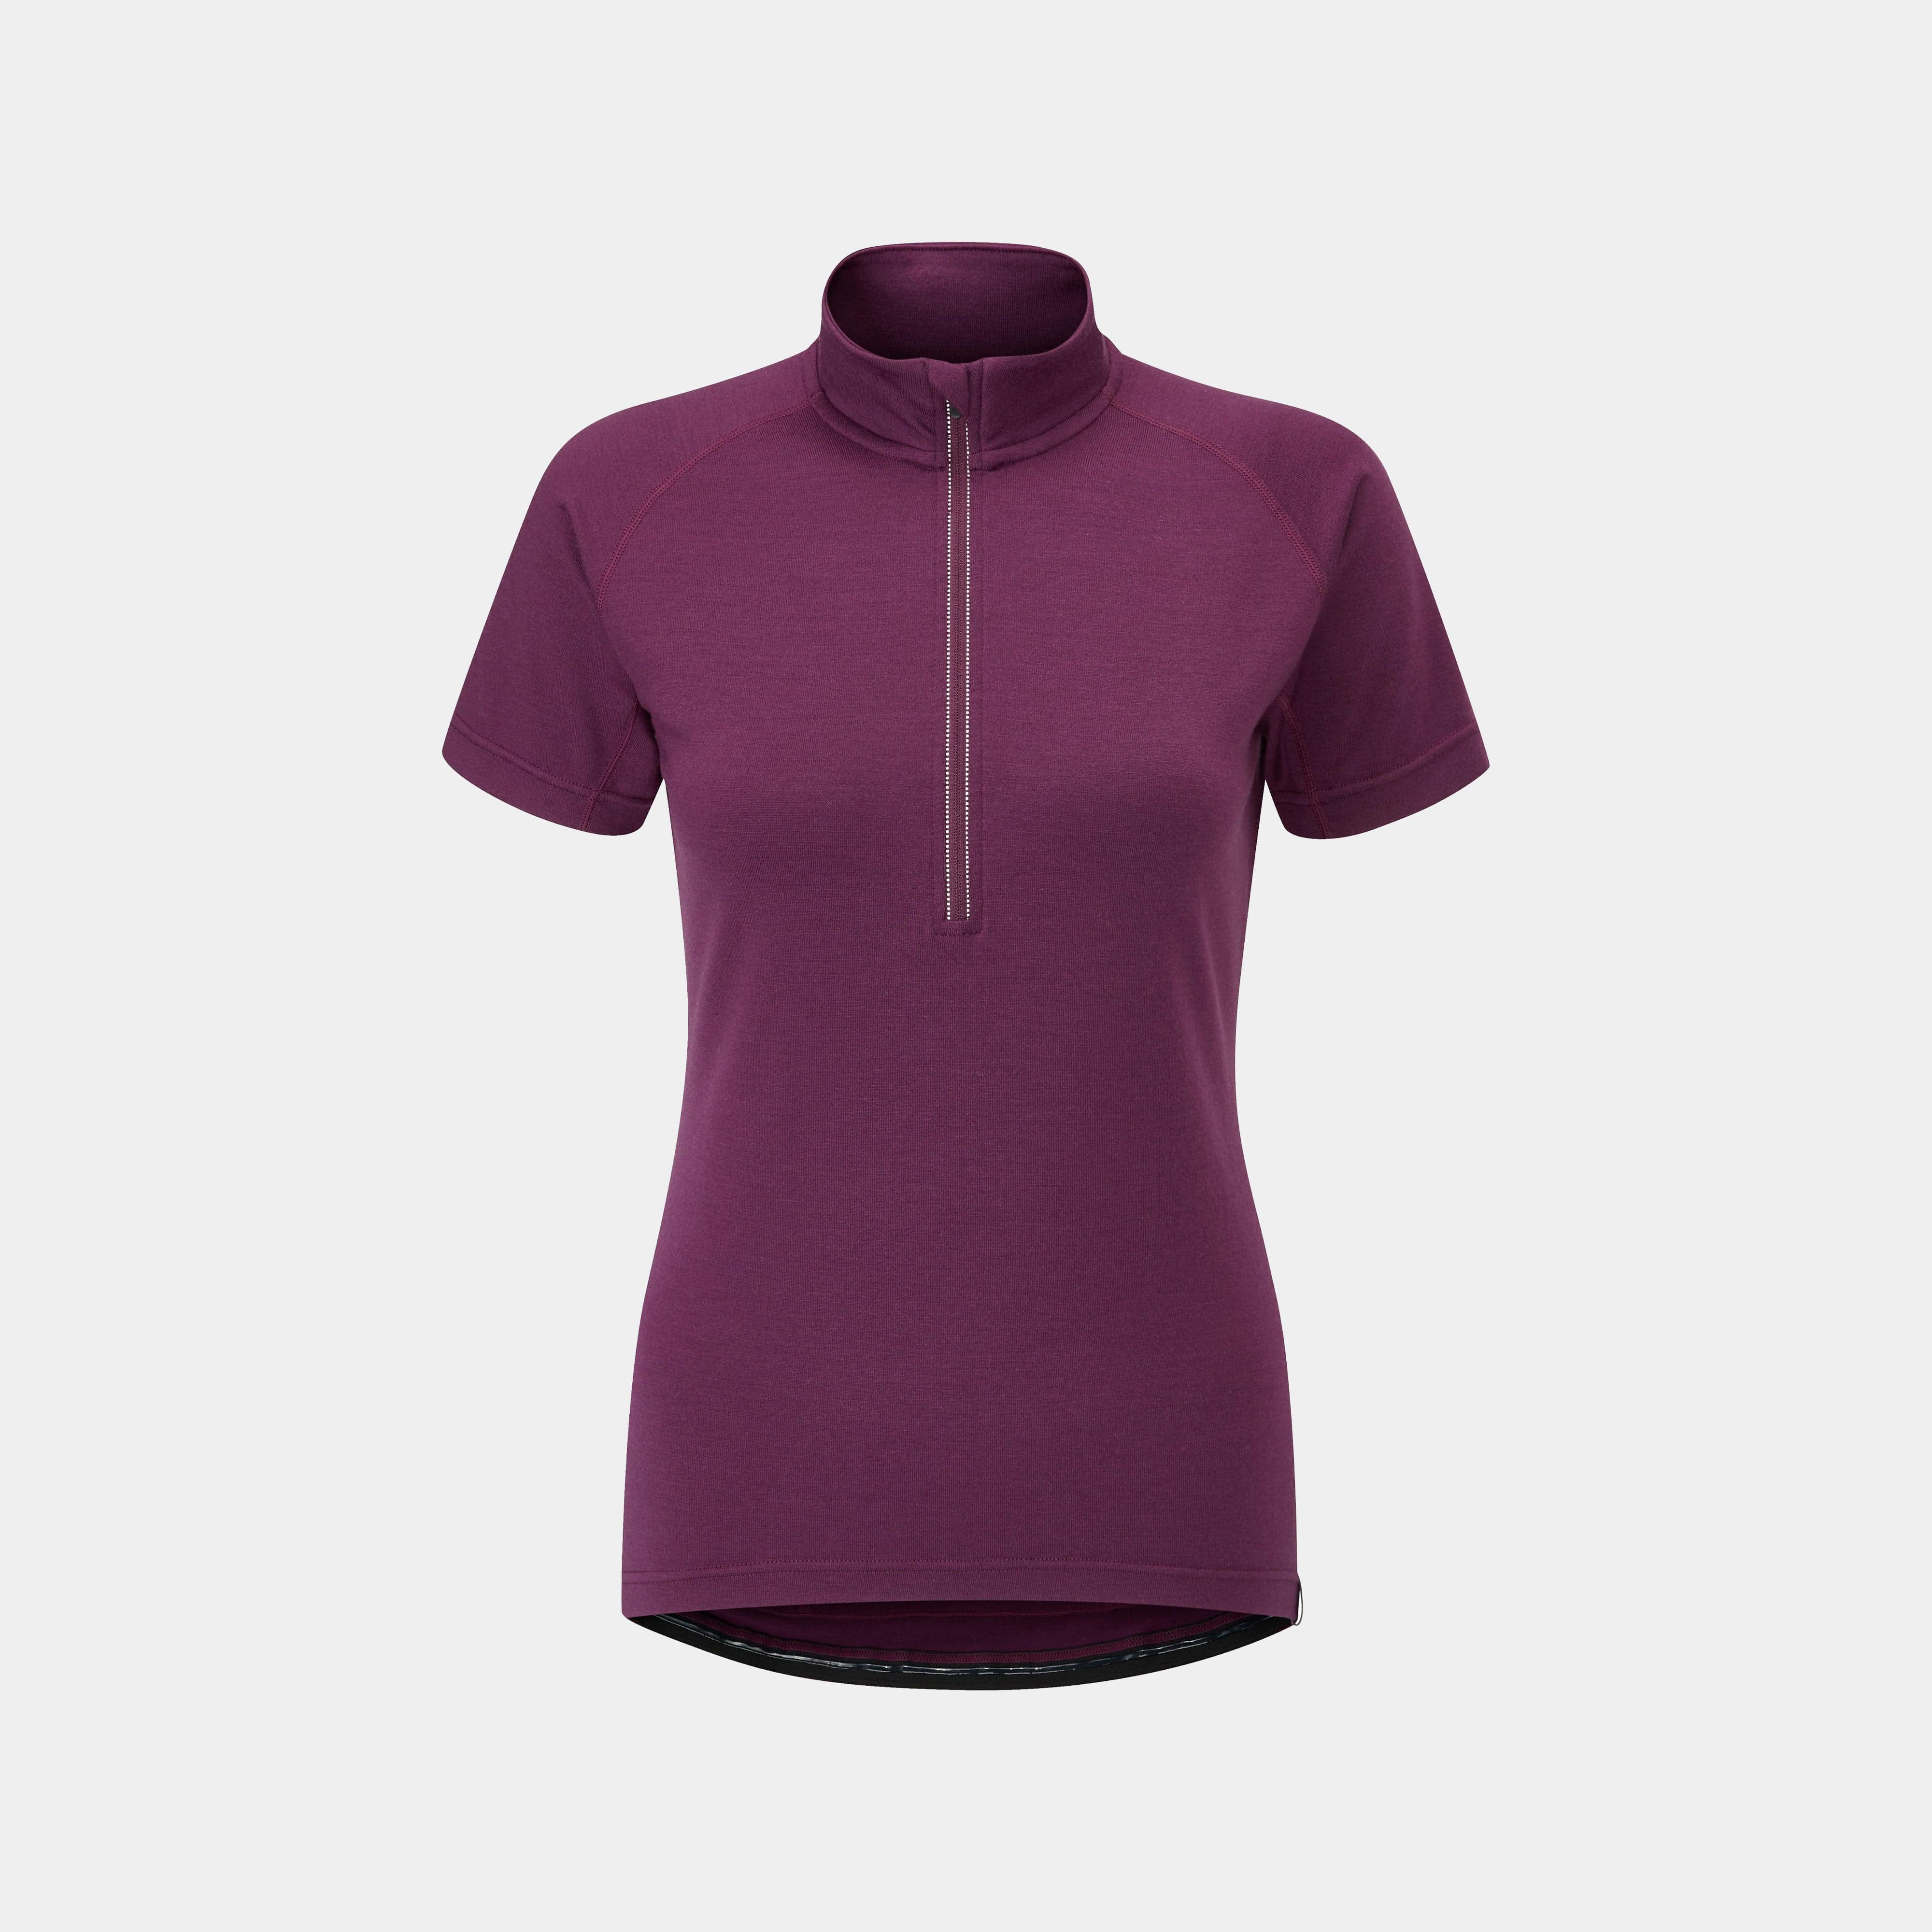 womens kepler velo short sleeve cycling jersey in purple